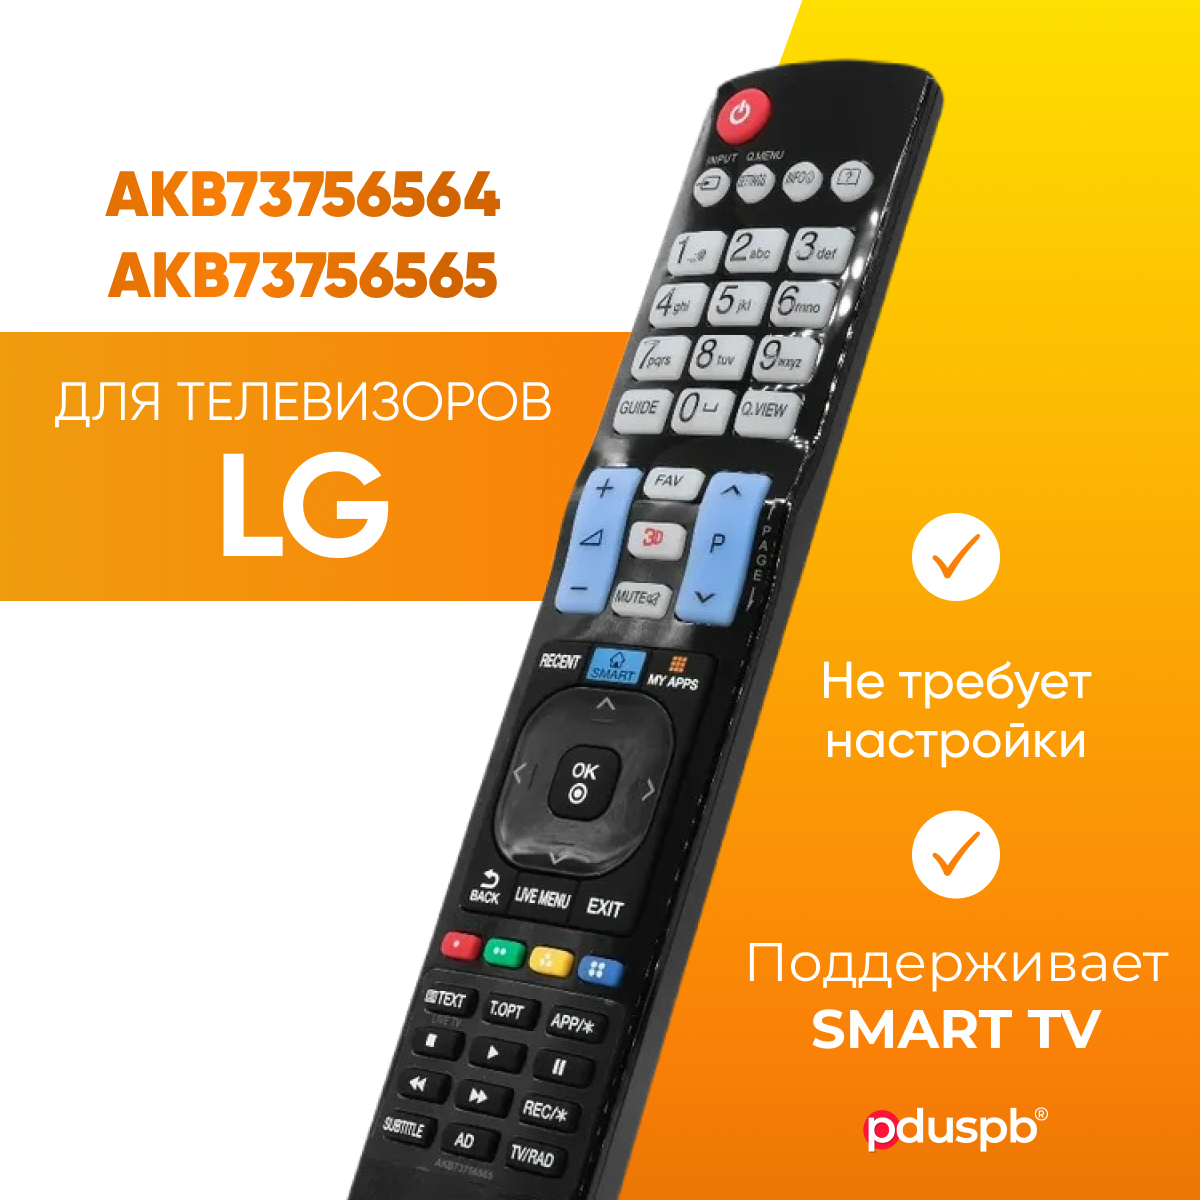 Пульт ду для телевизора LG magic motion Smart TV / AKB73756564 (AKB73756565) элджи / лж